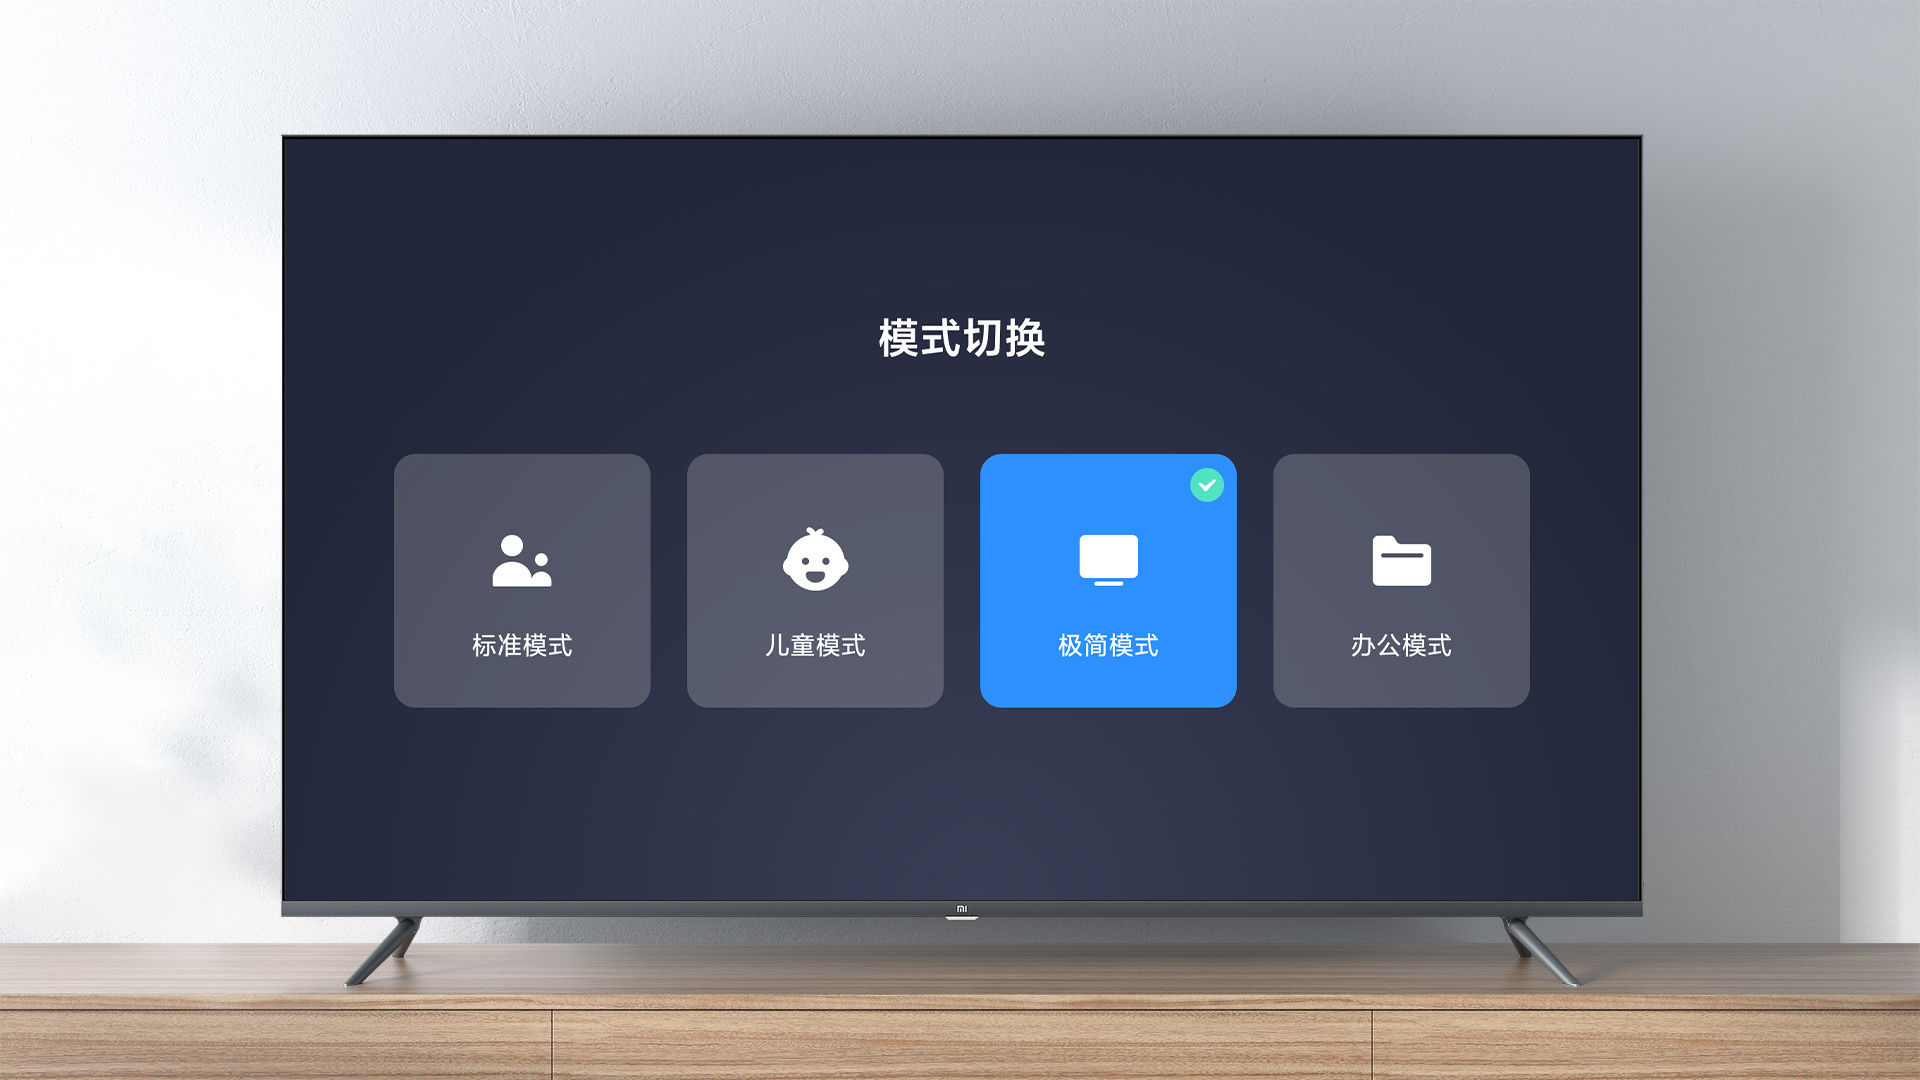 Xiaomi TV Office Mode